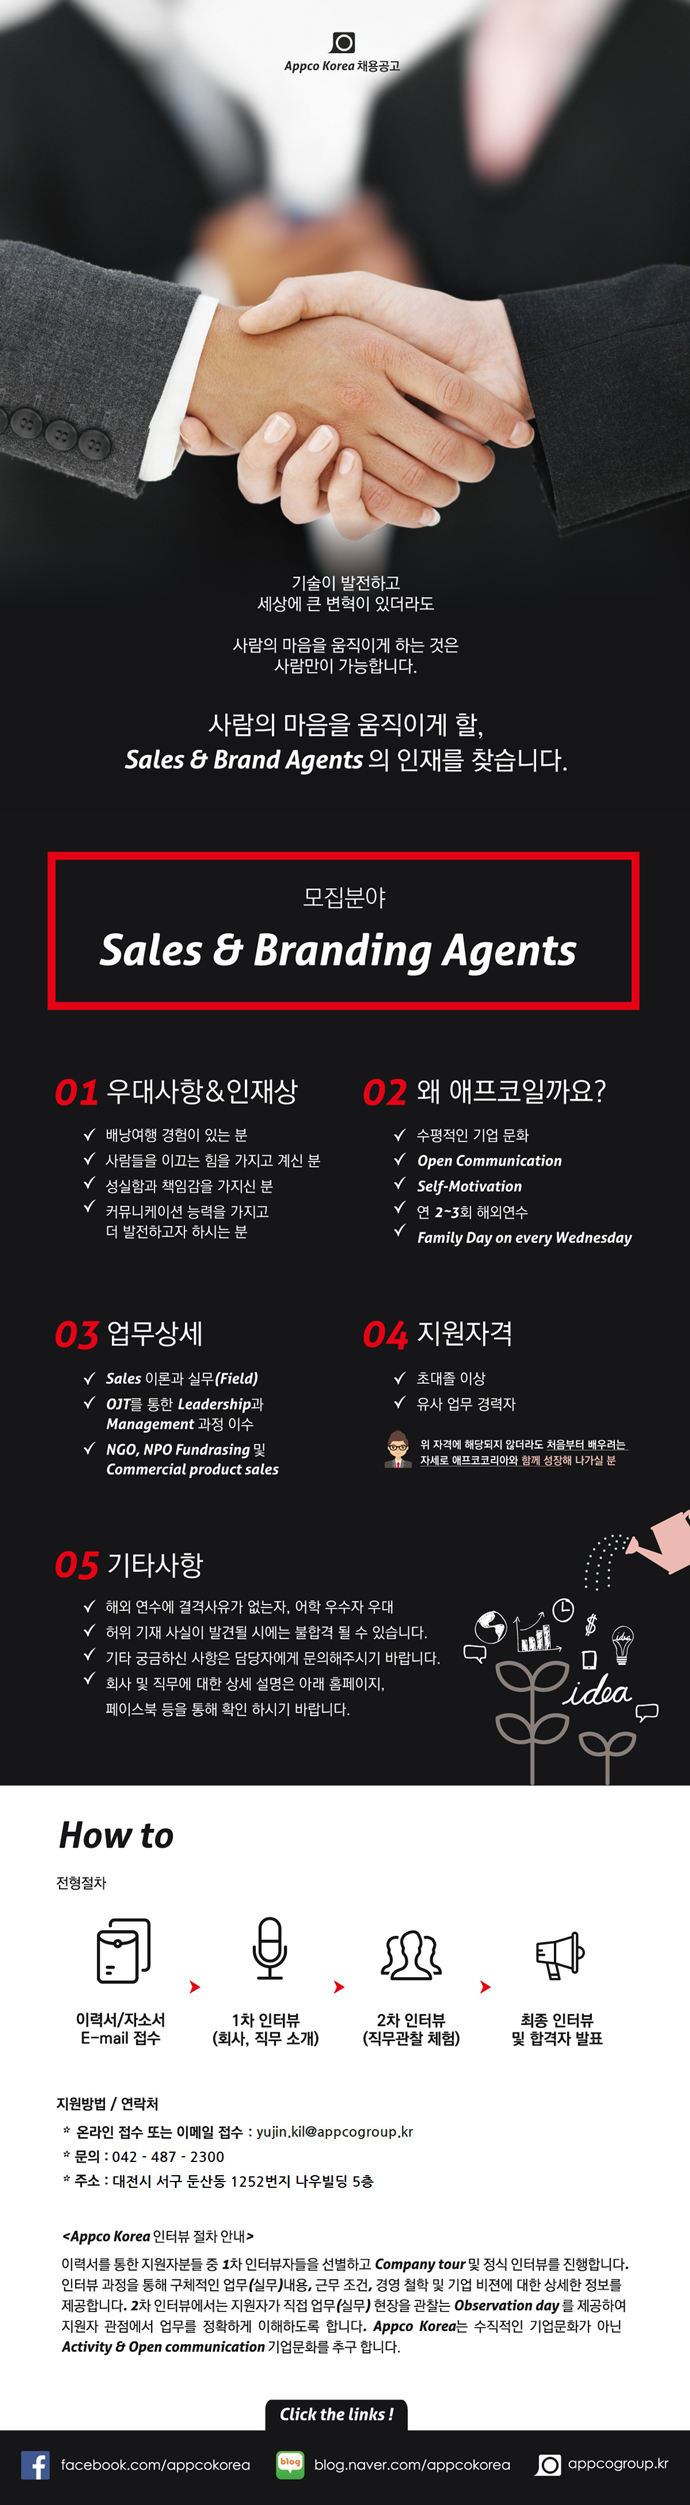 [외국계/대전지점] APPCO KOREA Sales & Branding Agents 모집